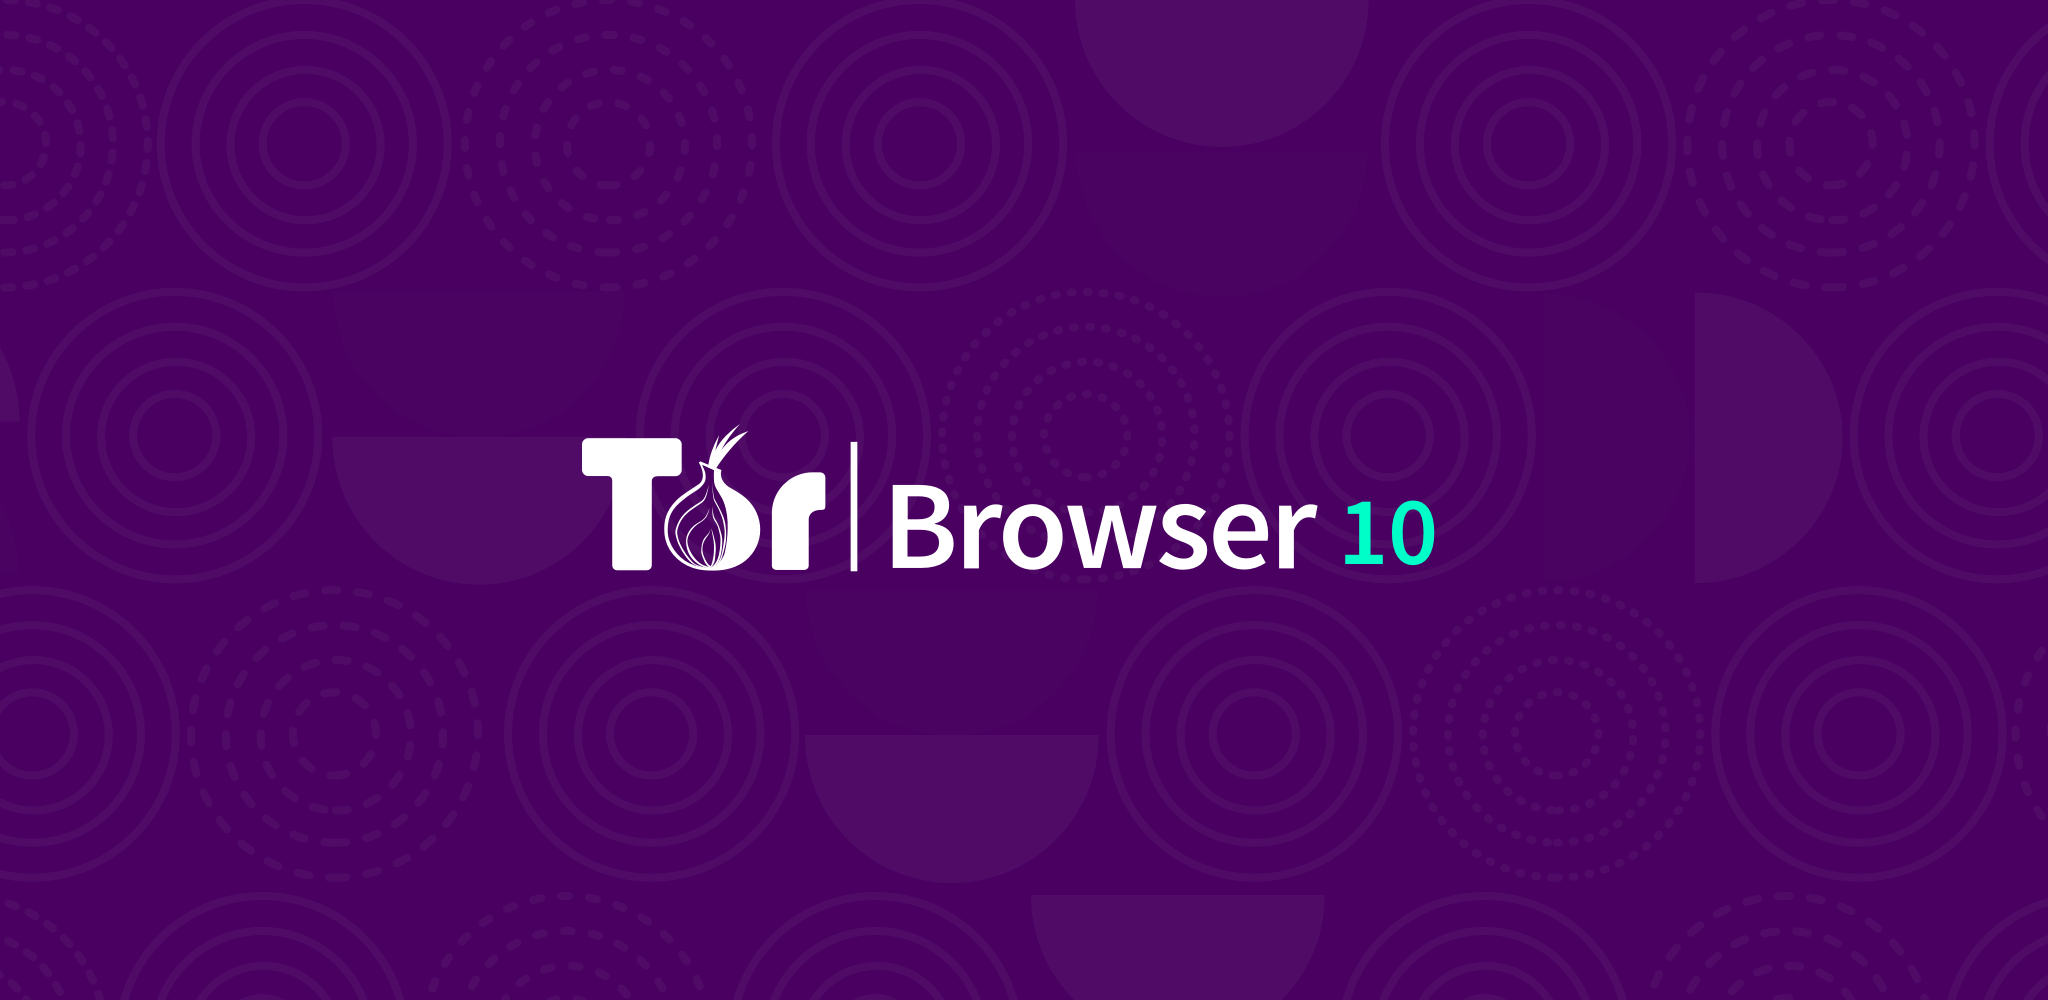 Скачать tor browser для xp hydraruzxpnew4af установить браузер тор бесплатно hudra